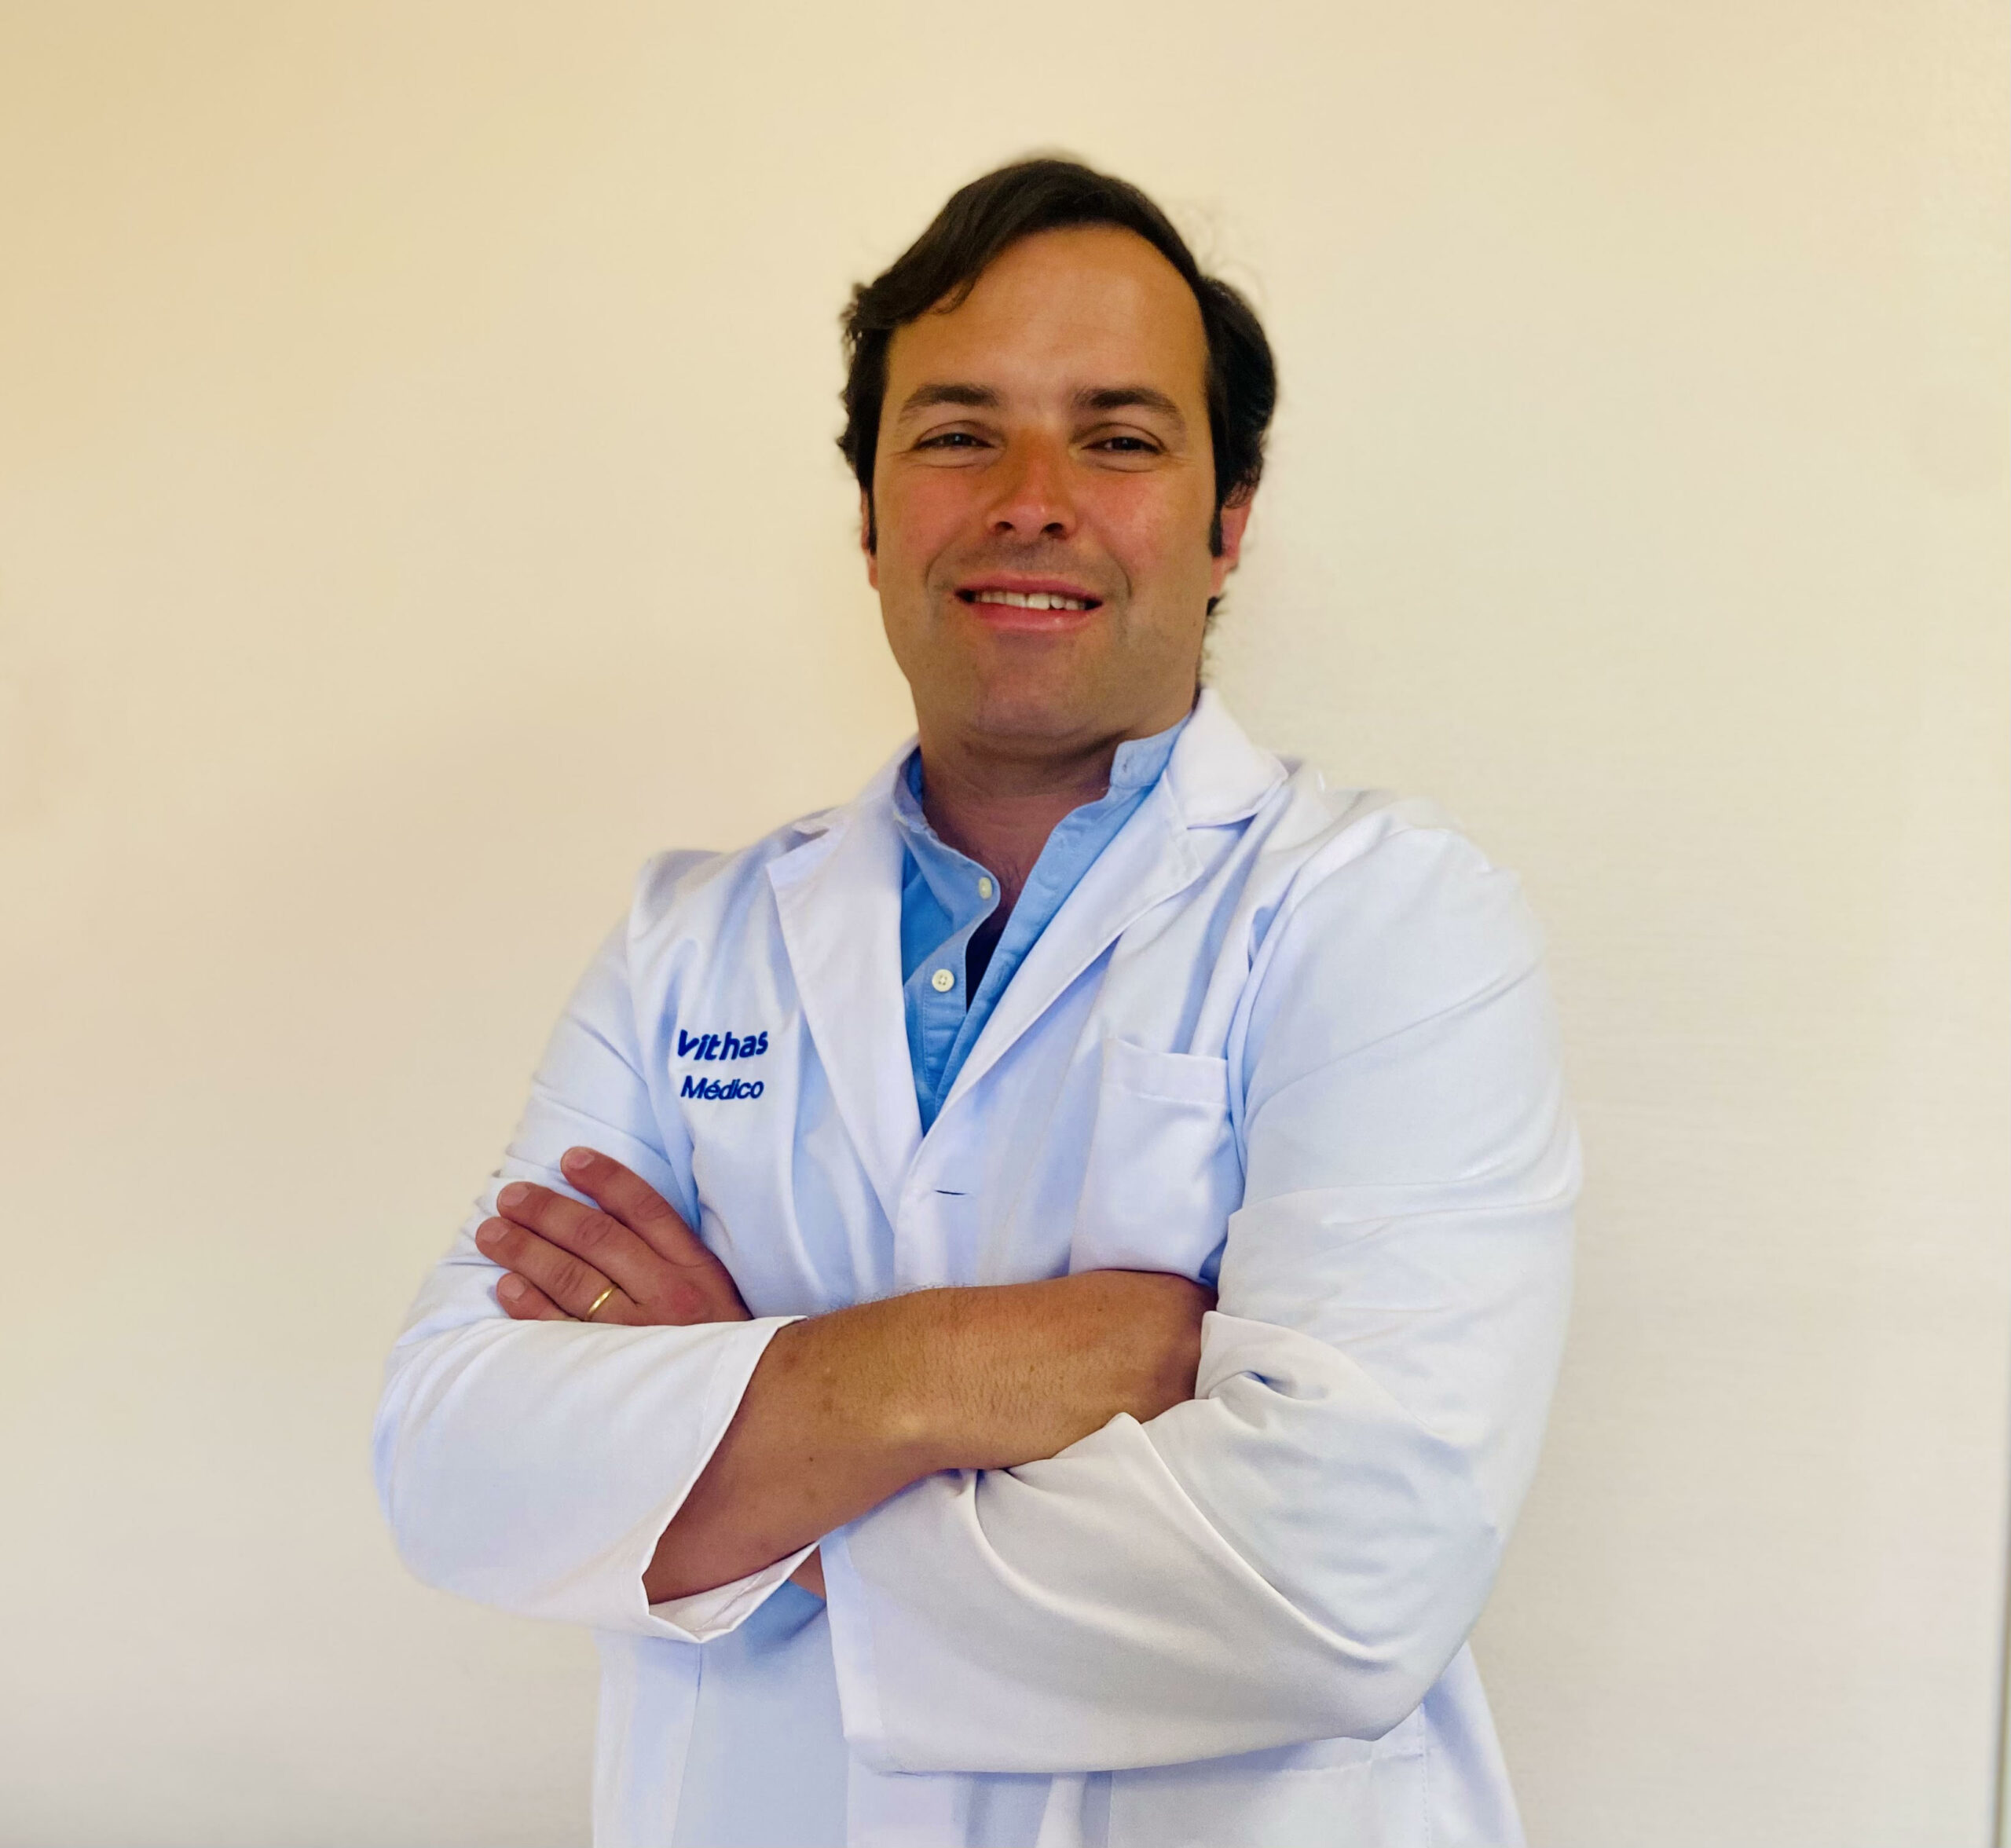 Dr. Fernando Corbi Aguirre